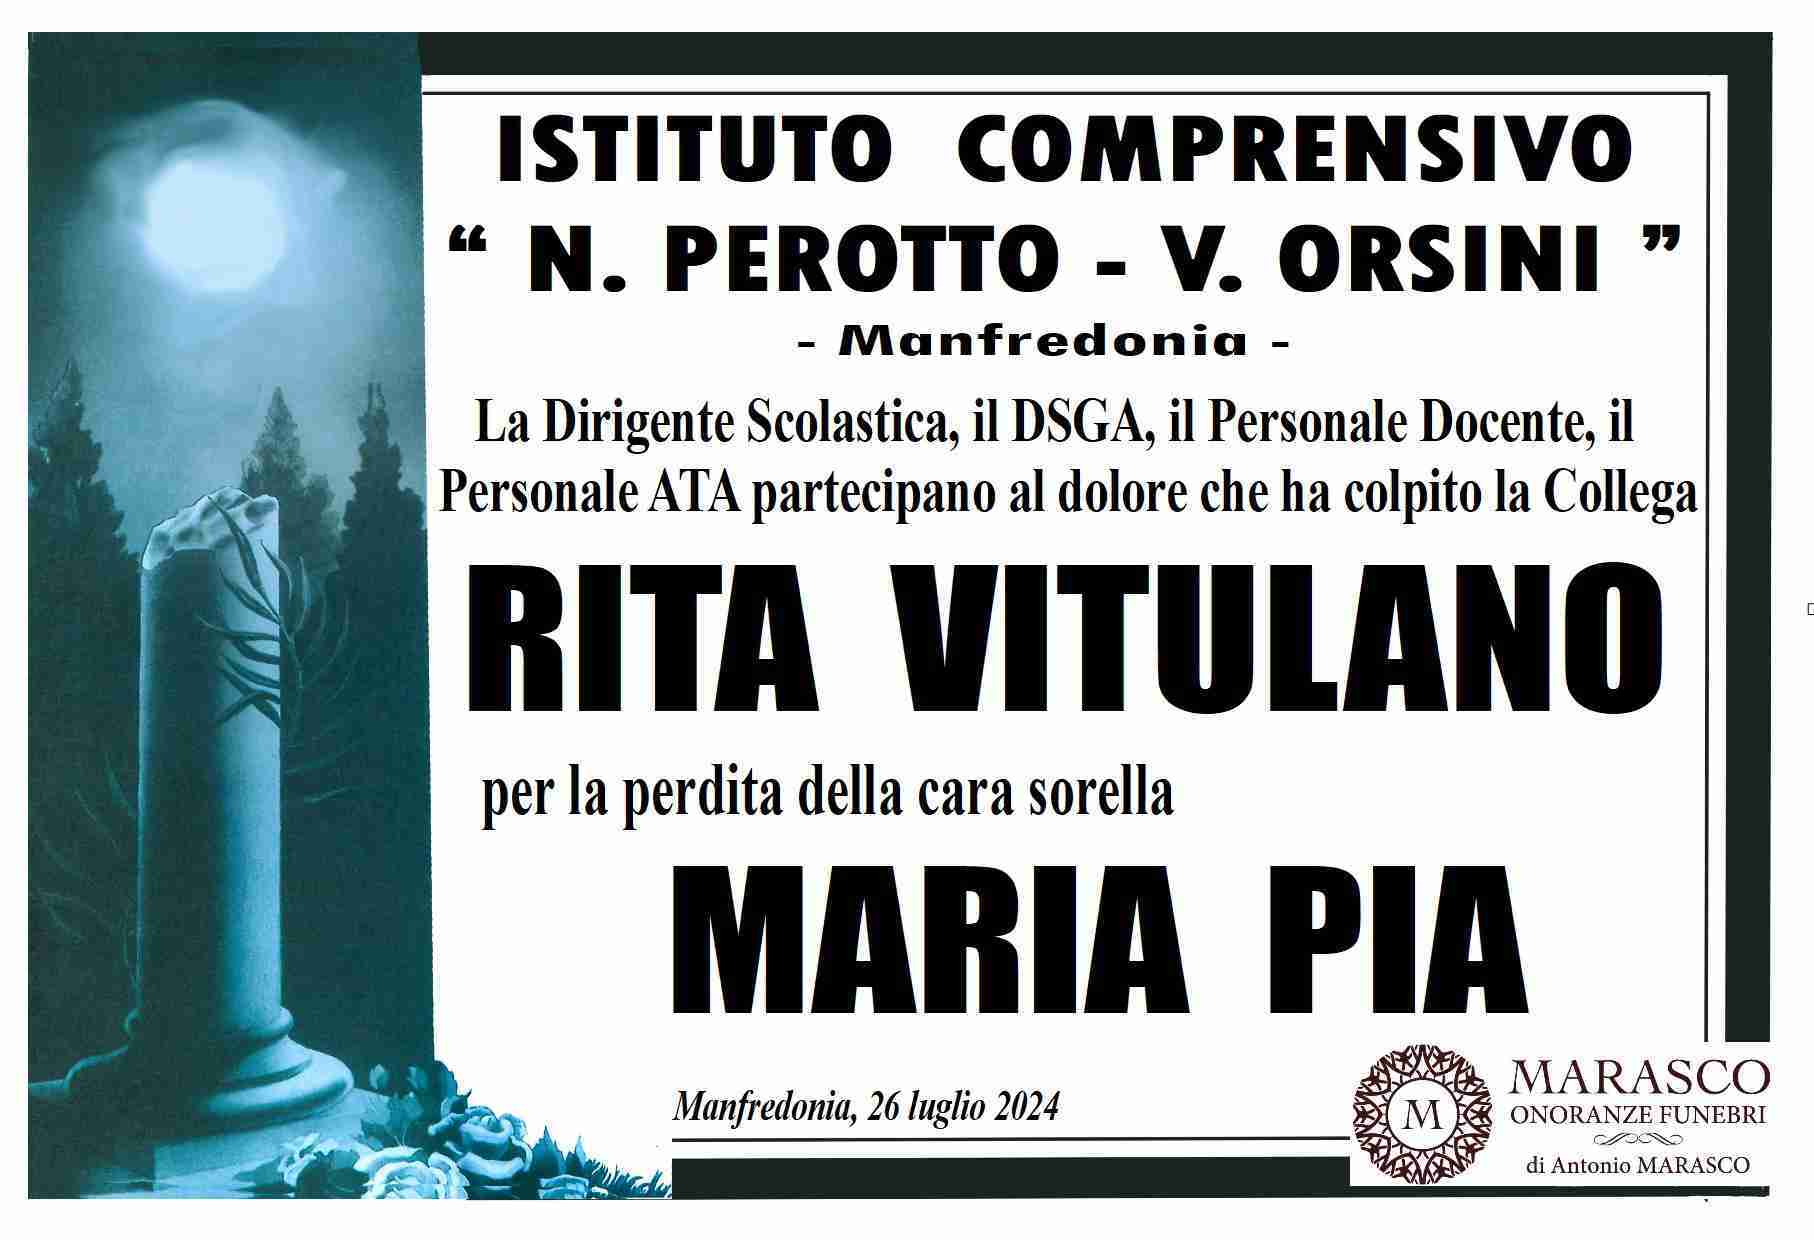 Maria Pia Vitulano in Tommaso Pellegrino